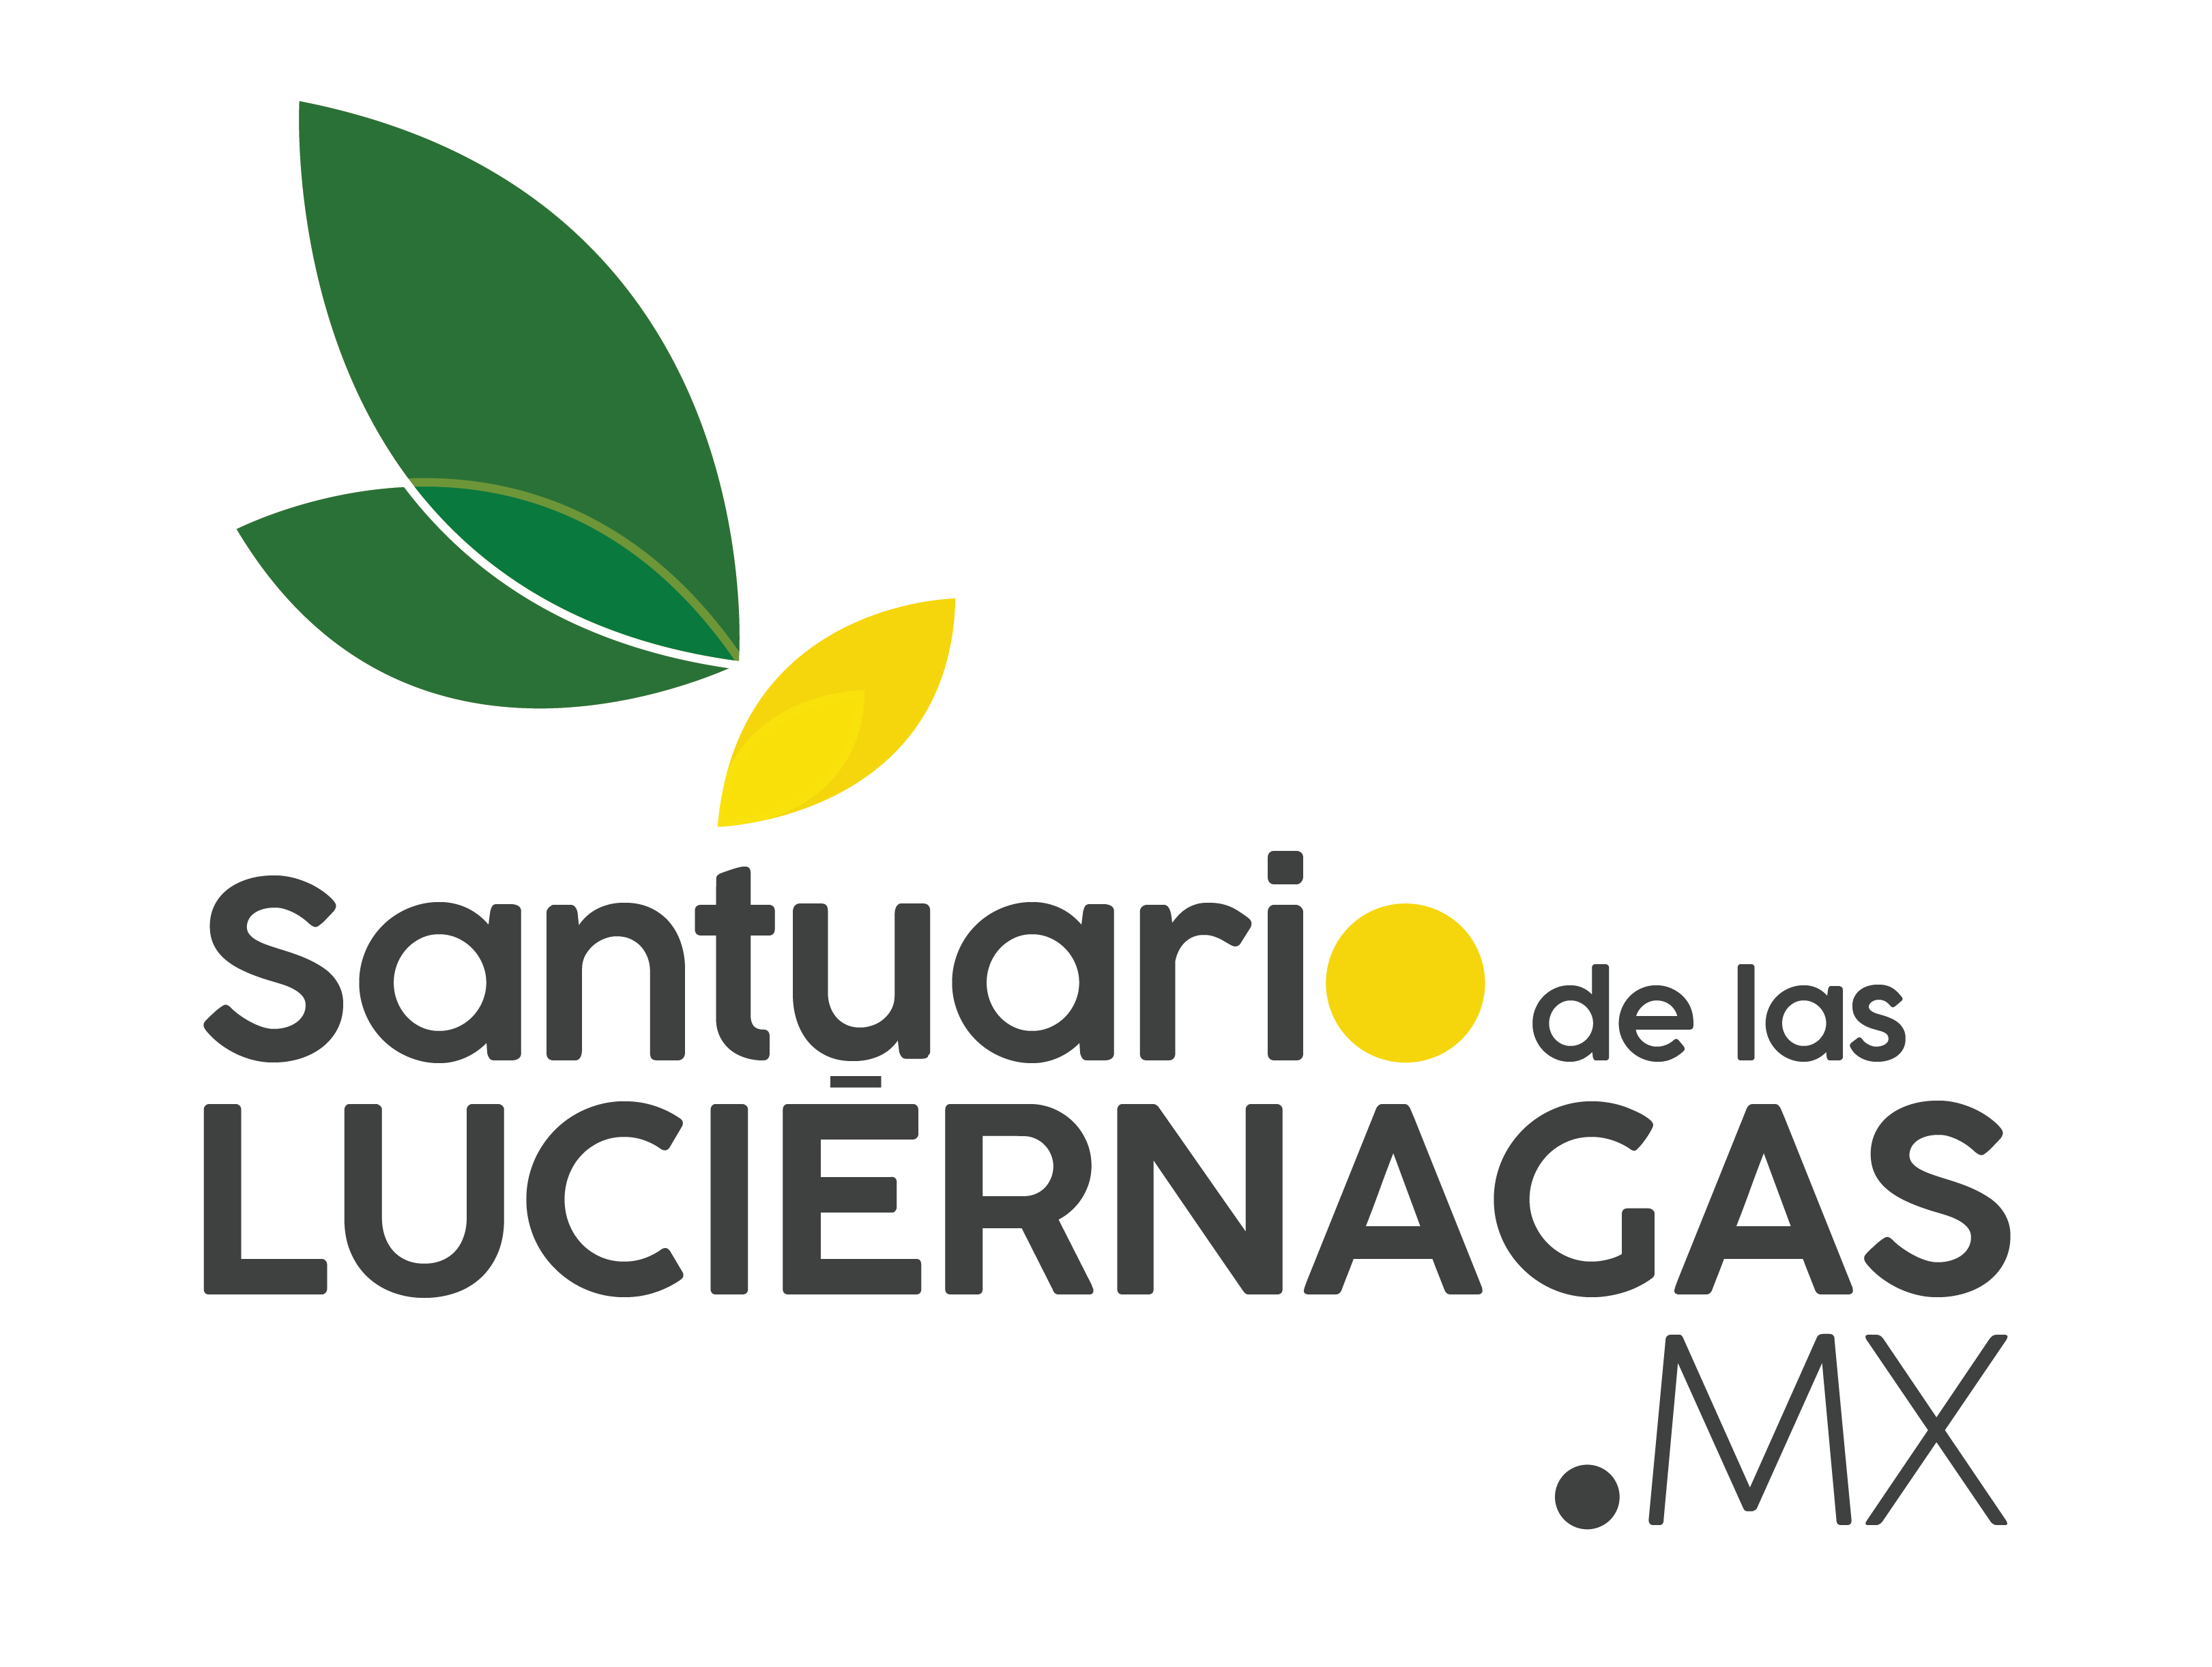 Santuario de las Luciernagas MX